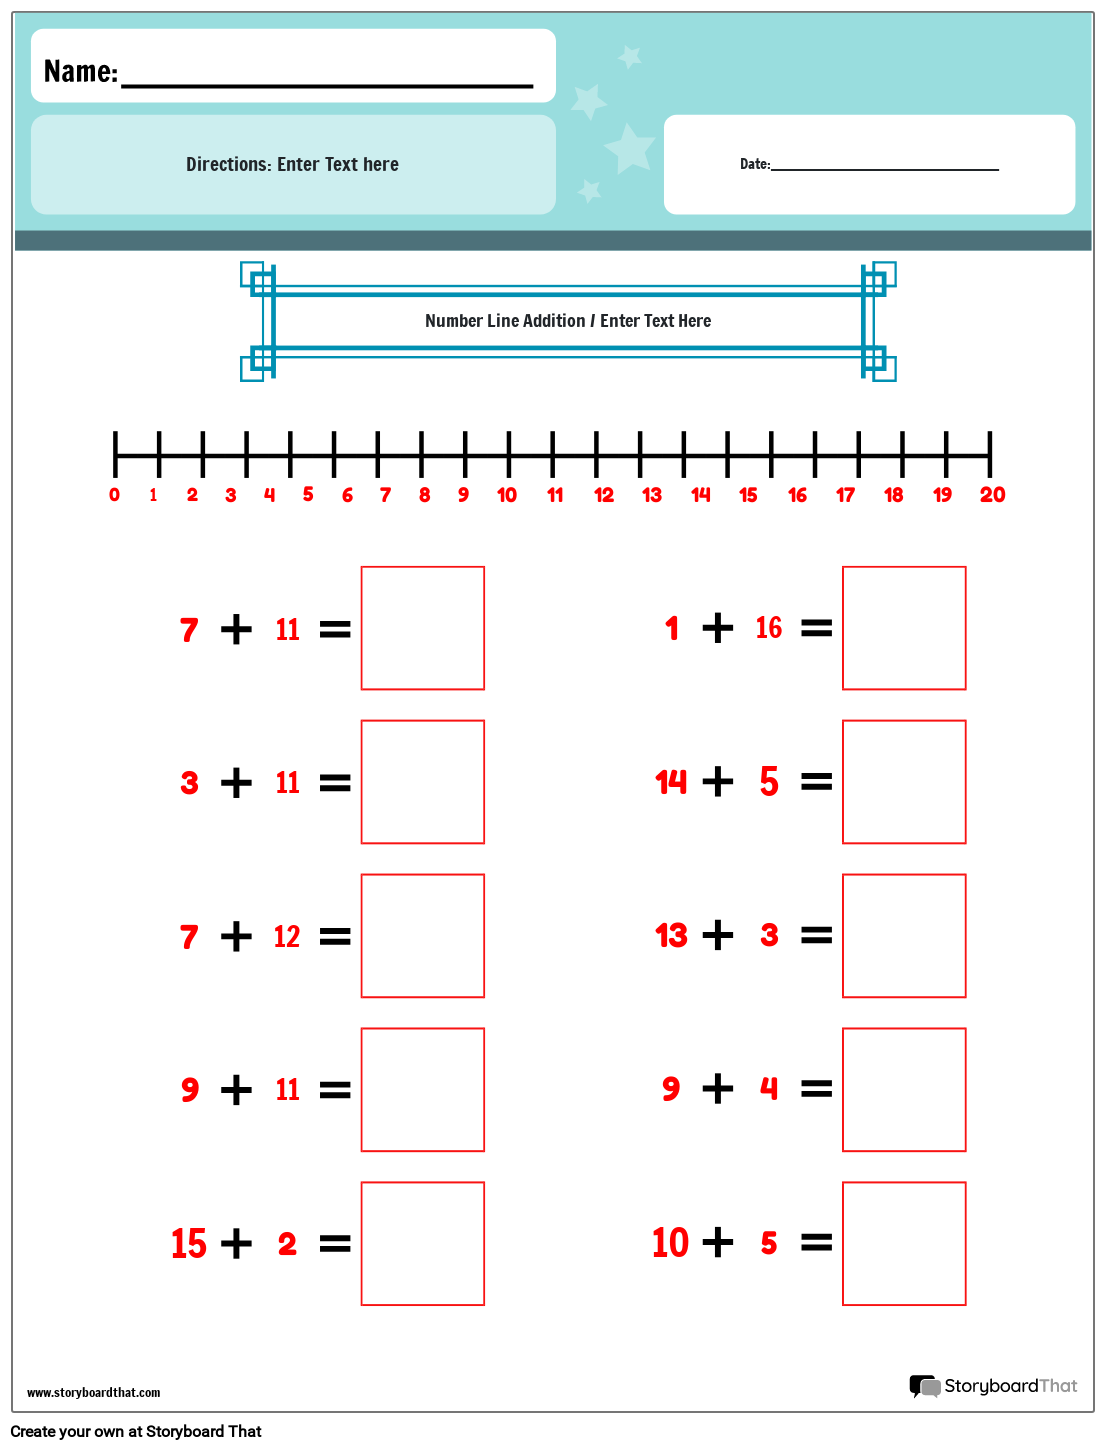 number-line-addition-color-worksheet-storyboard